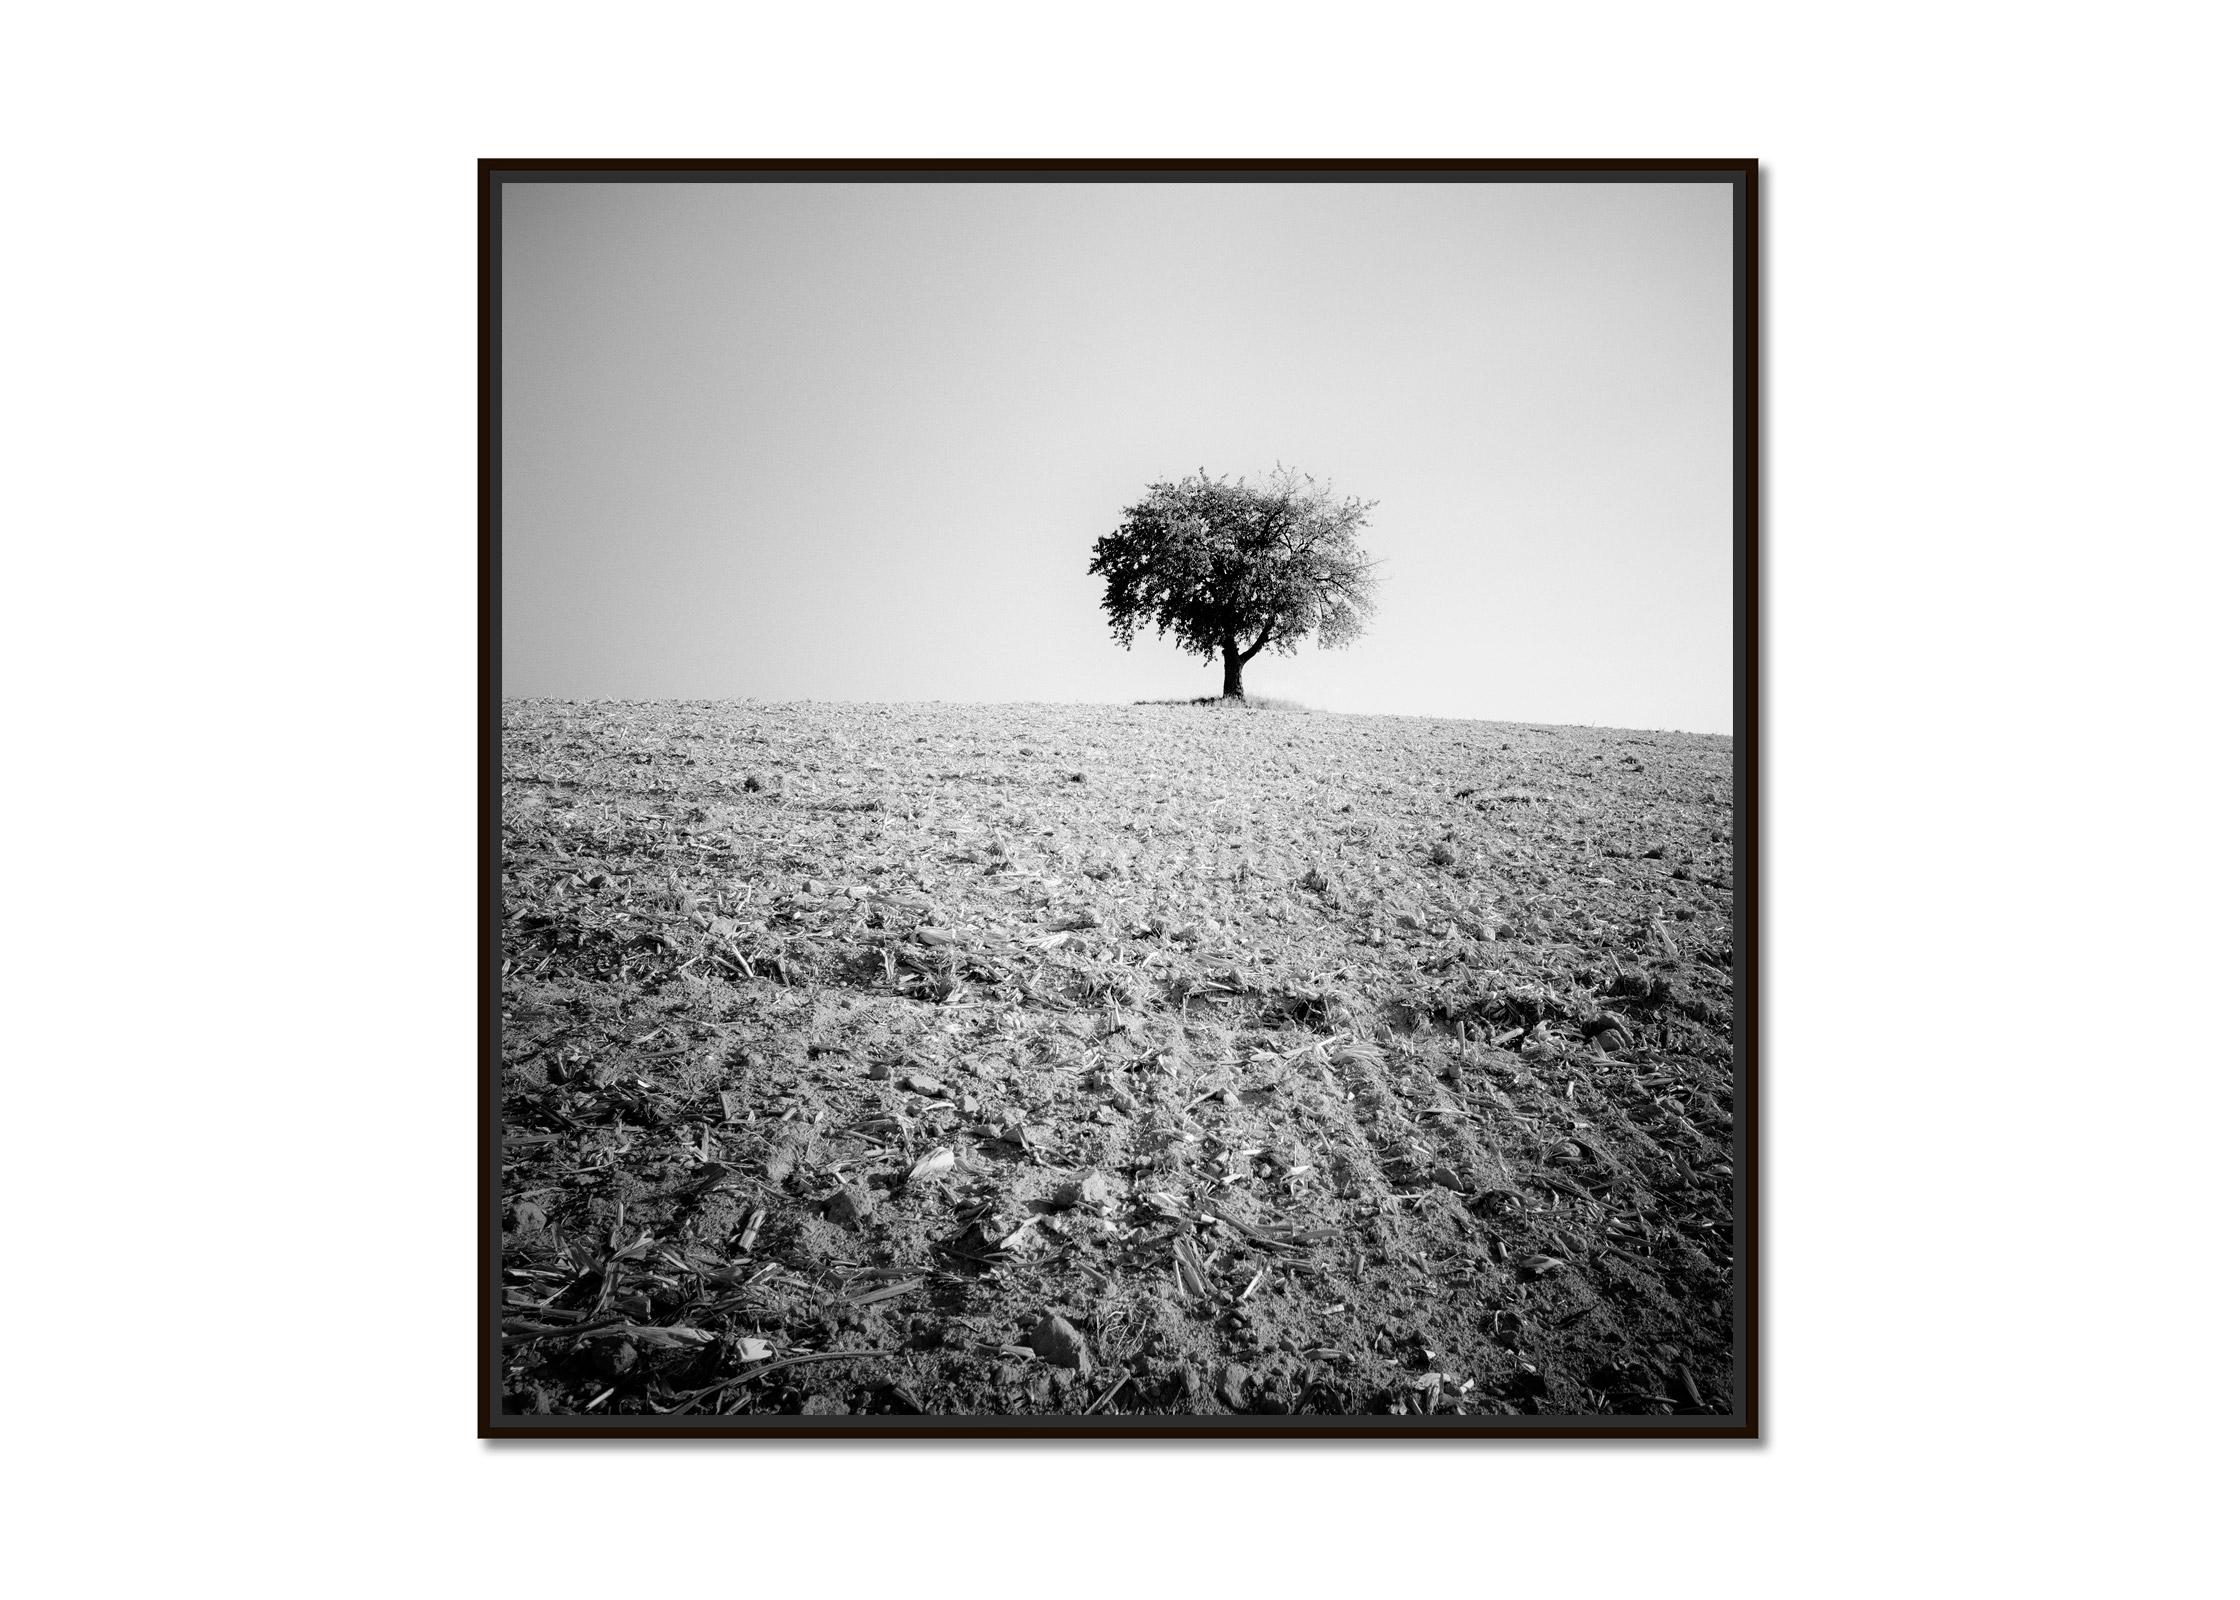 Arbre solitaire, champ moissonné, photographie minimaliste en noir et blanc, paysage - Photograph de Gerald Berghammer